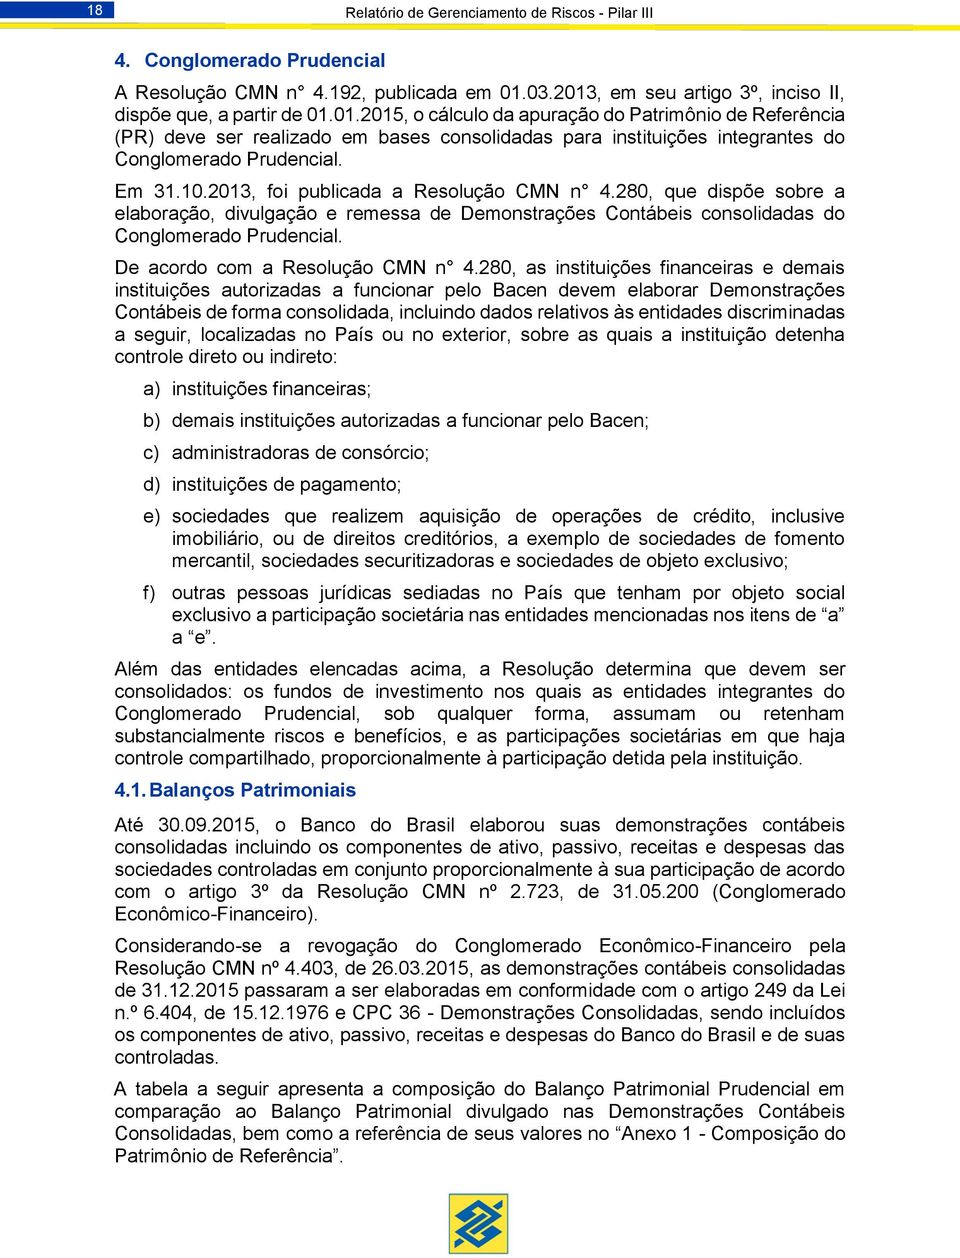 Em 31.10.2013, foi publicada a Resolução CMN n 4.280, que dispõe sobre a elaboração, divulgação e remessa de Demonstrações Contábeis consolidadas do Conglomerado Prudencial.